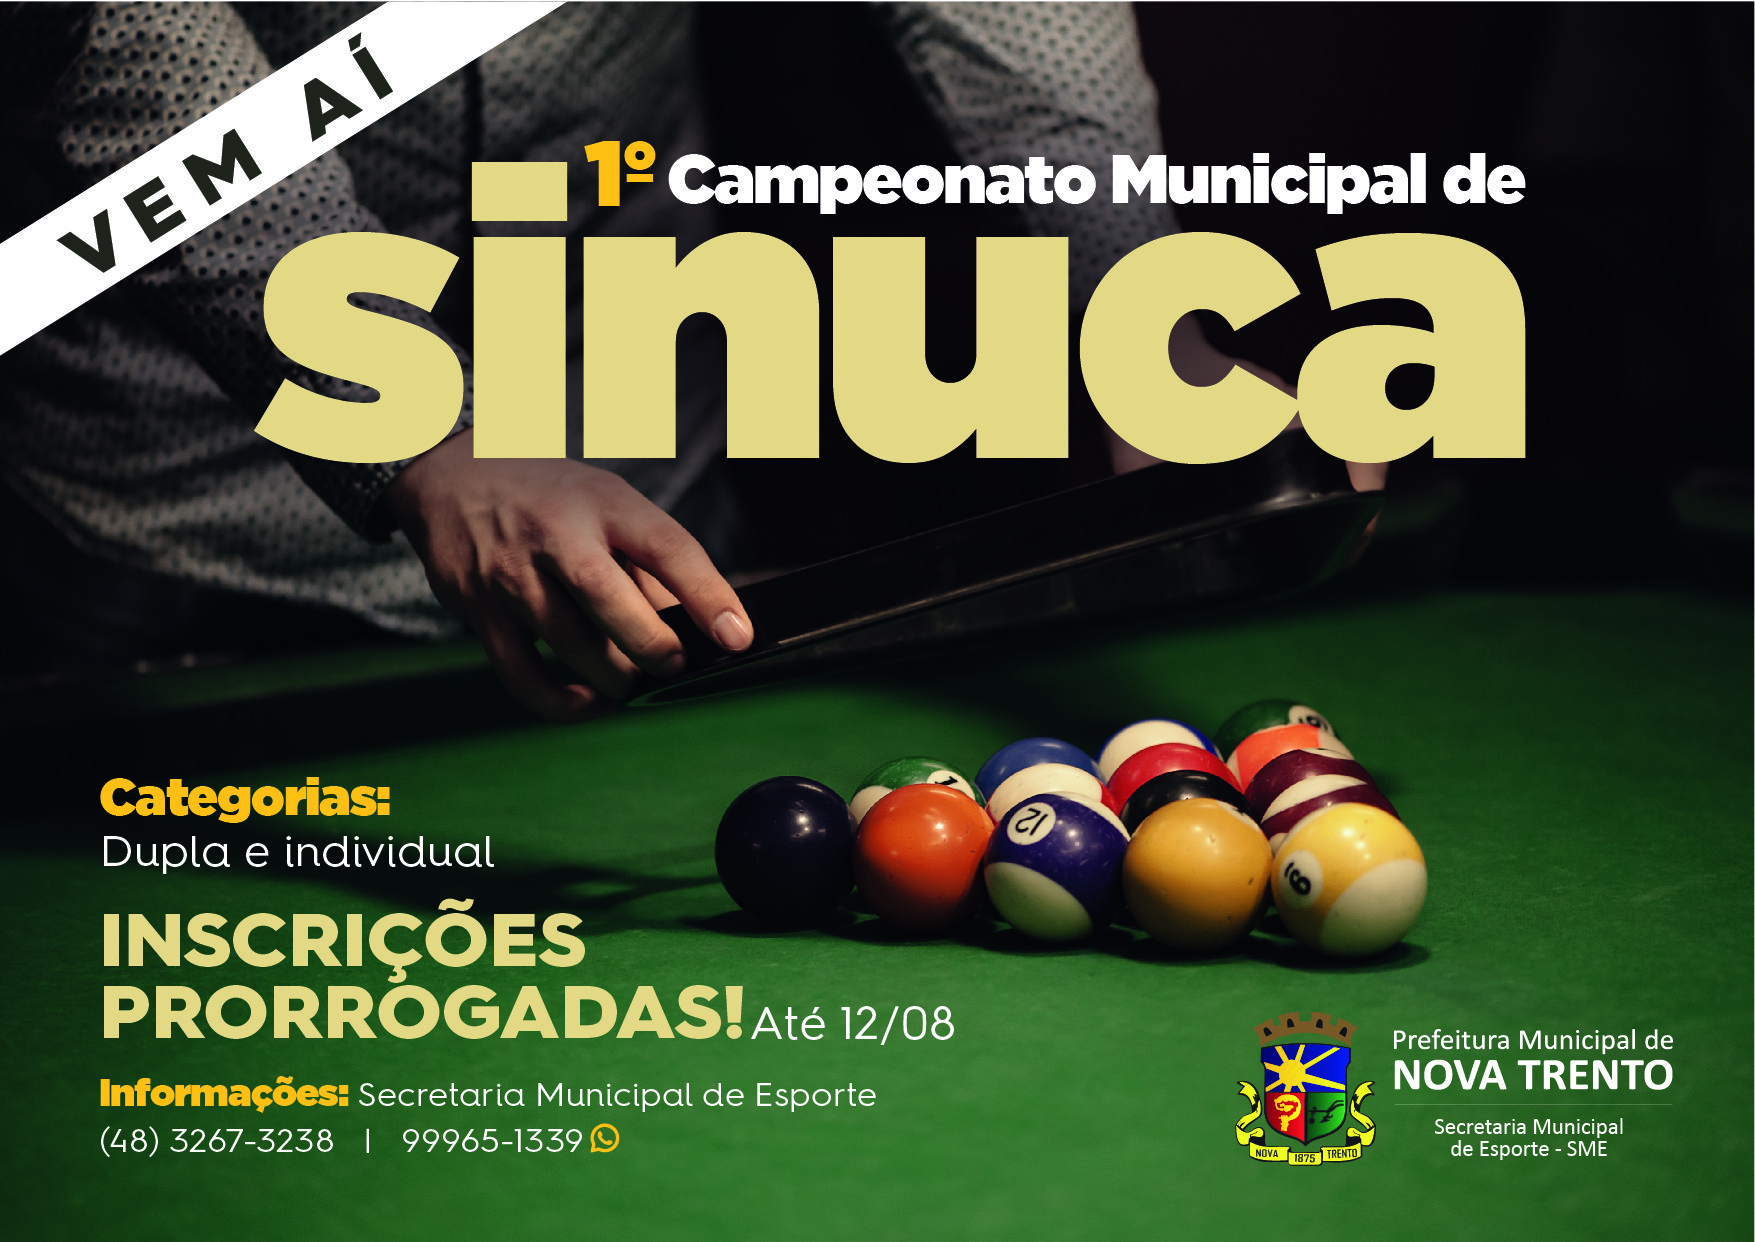 Nestes dias 13, 14 e 15 de novembro acontece em Deodápolis o 1º torneio de  sinuca